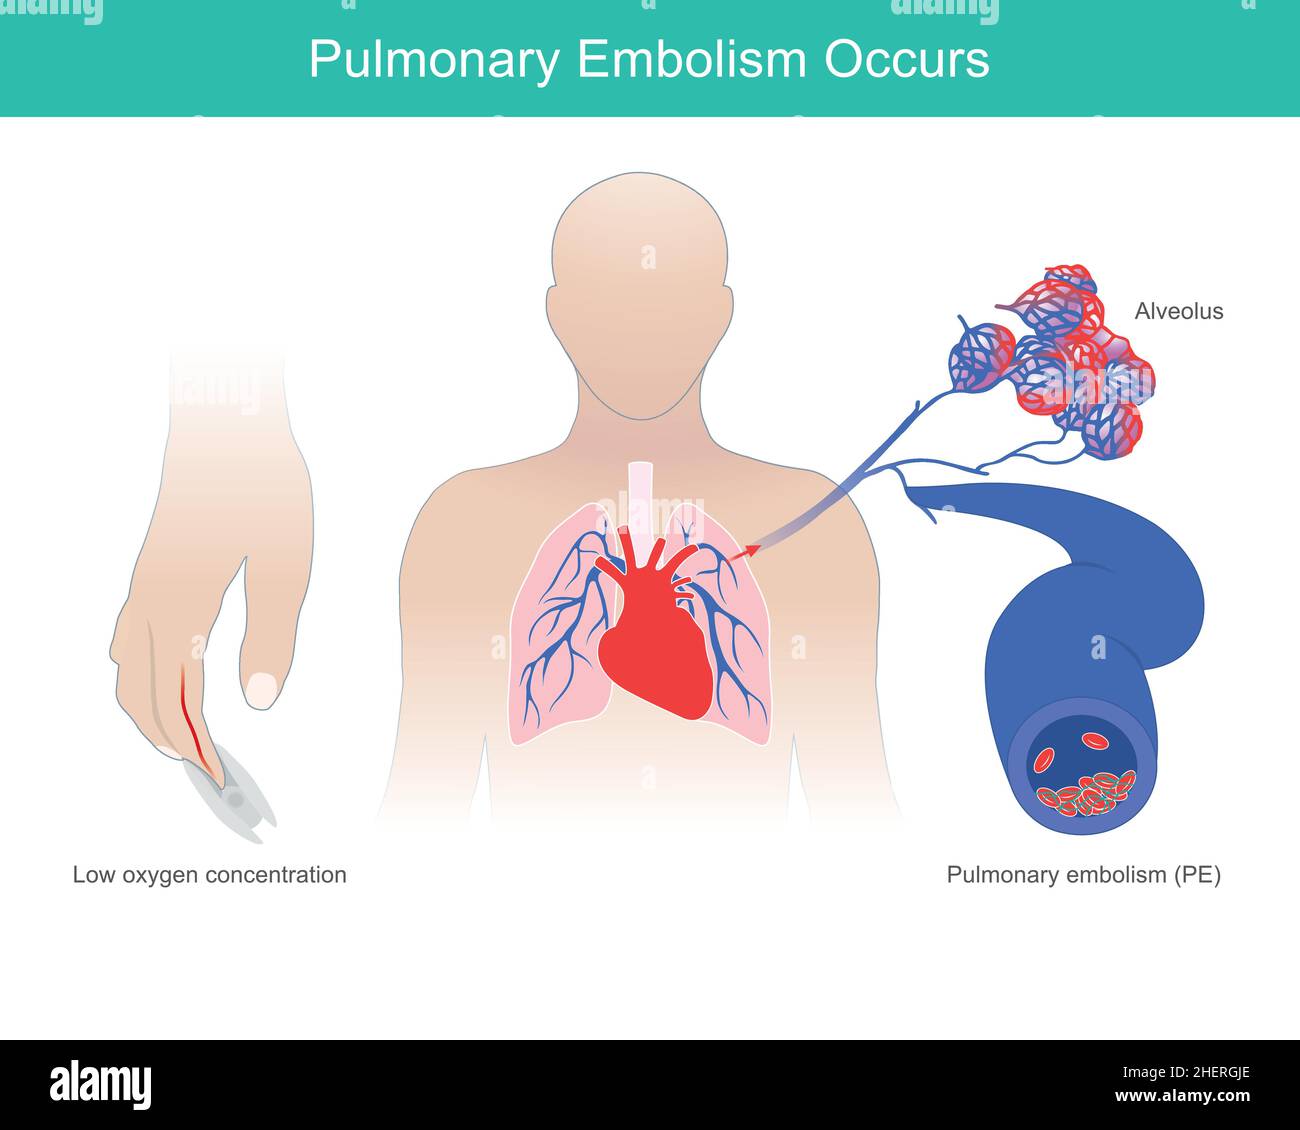 Se presenta embolismo pulmonar. Se presenta una condición anormal de bajo nivel de oxígeno en la sangre como causa de embolia pulmonar. Ilustración del Vector